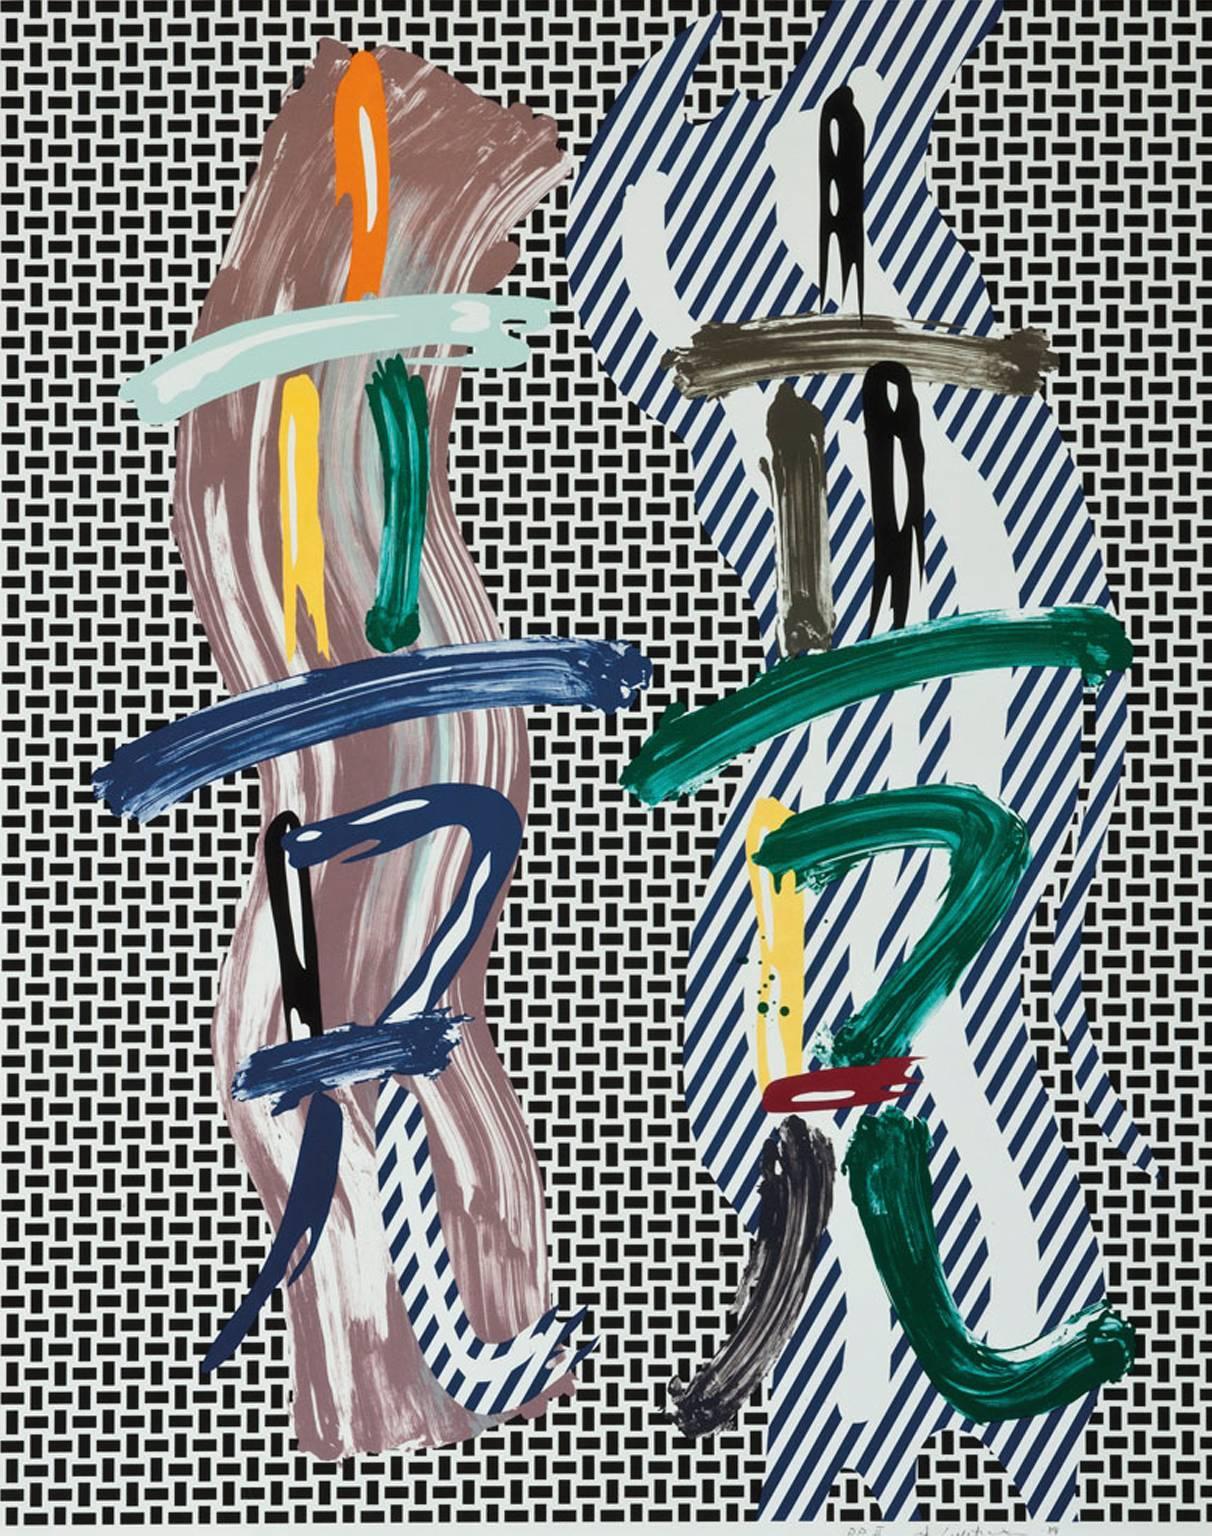 Roy Lichtenstein Abstract Print - Brushstroke Contest